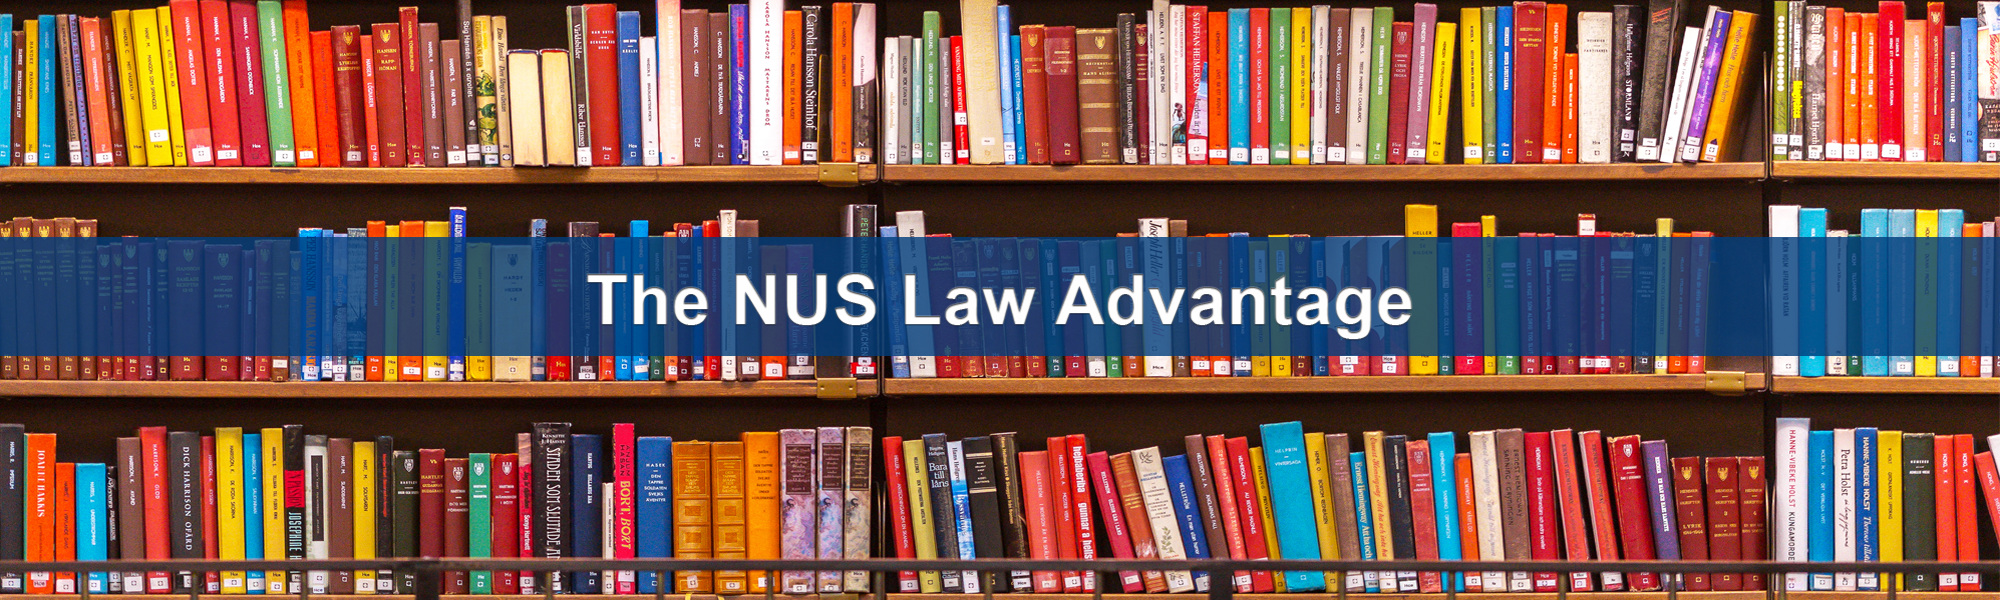 The nus law advantage banner